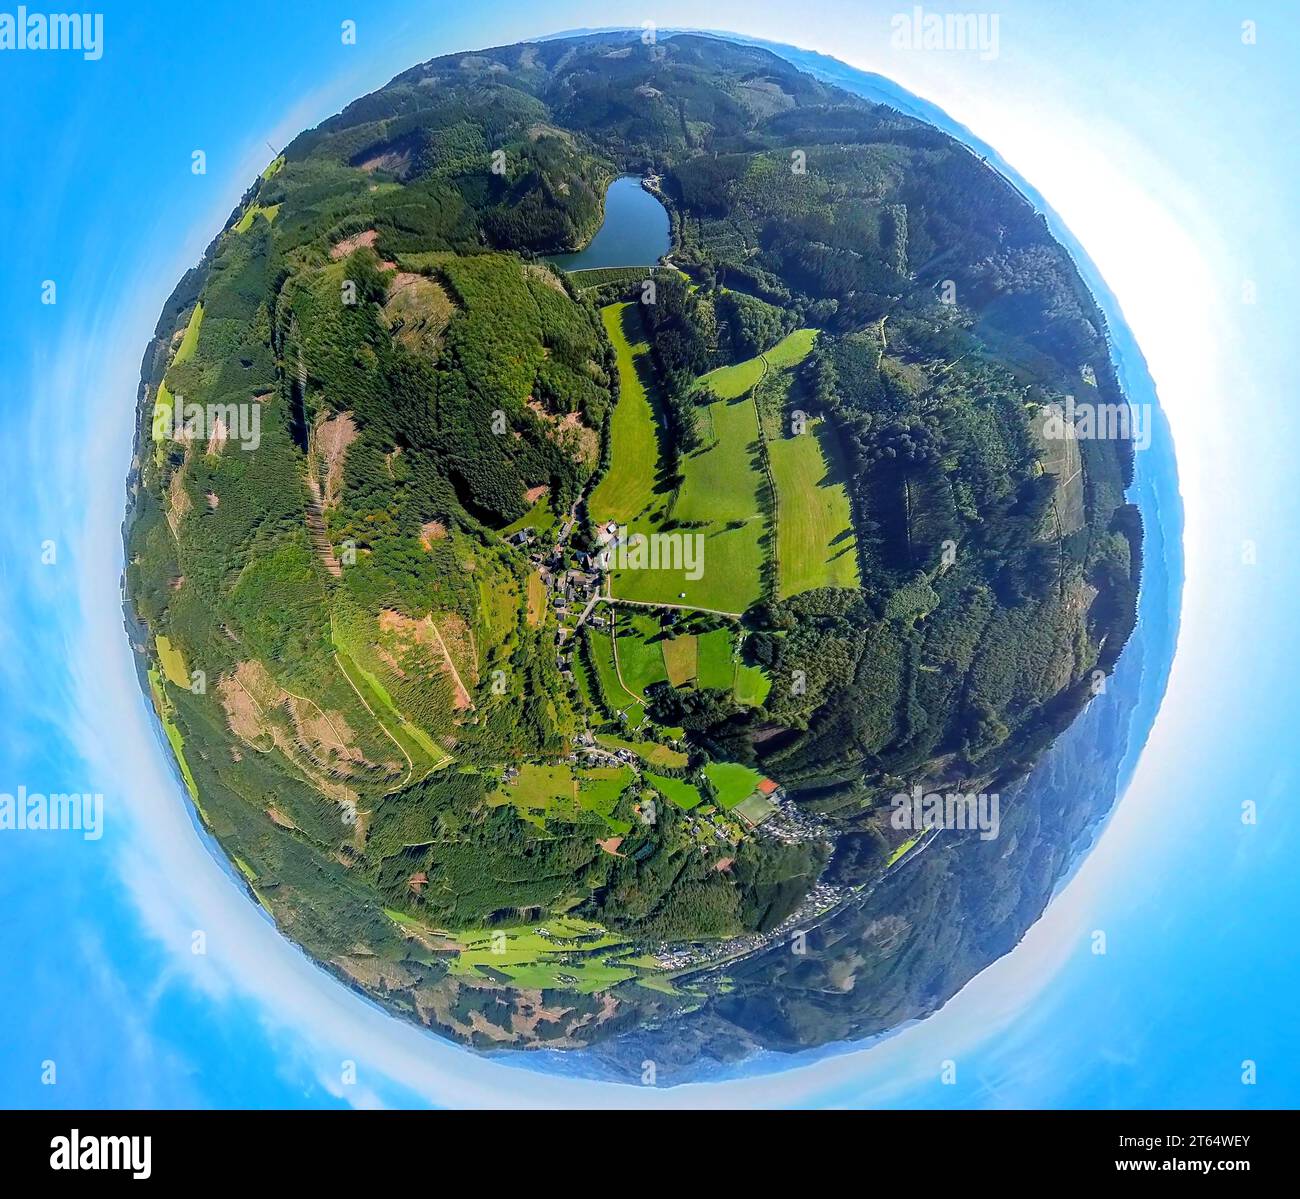 Vista aerea, distretto forestale Glinge, Glingebachtalsperre, globo terrestre, immagine fisheye, immagine a 360 gradi, piccolo mondo, Rönkhausen, Finnentrop, Sauer Foto Stock